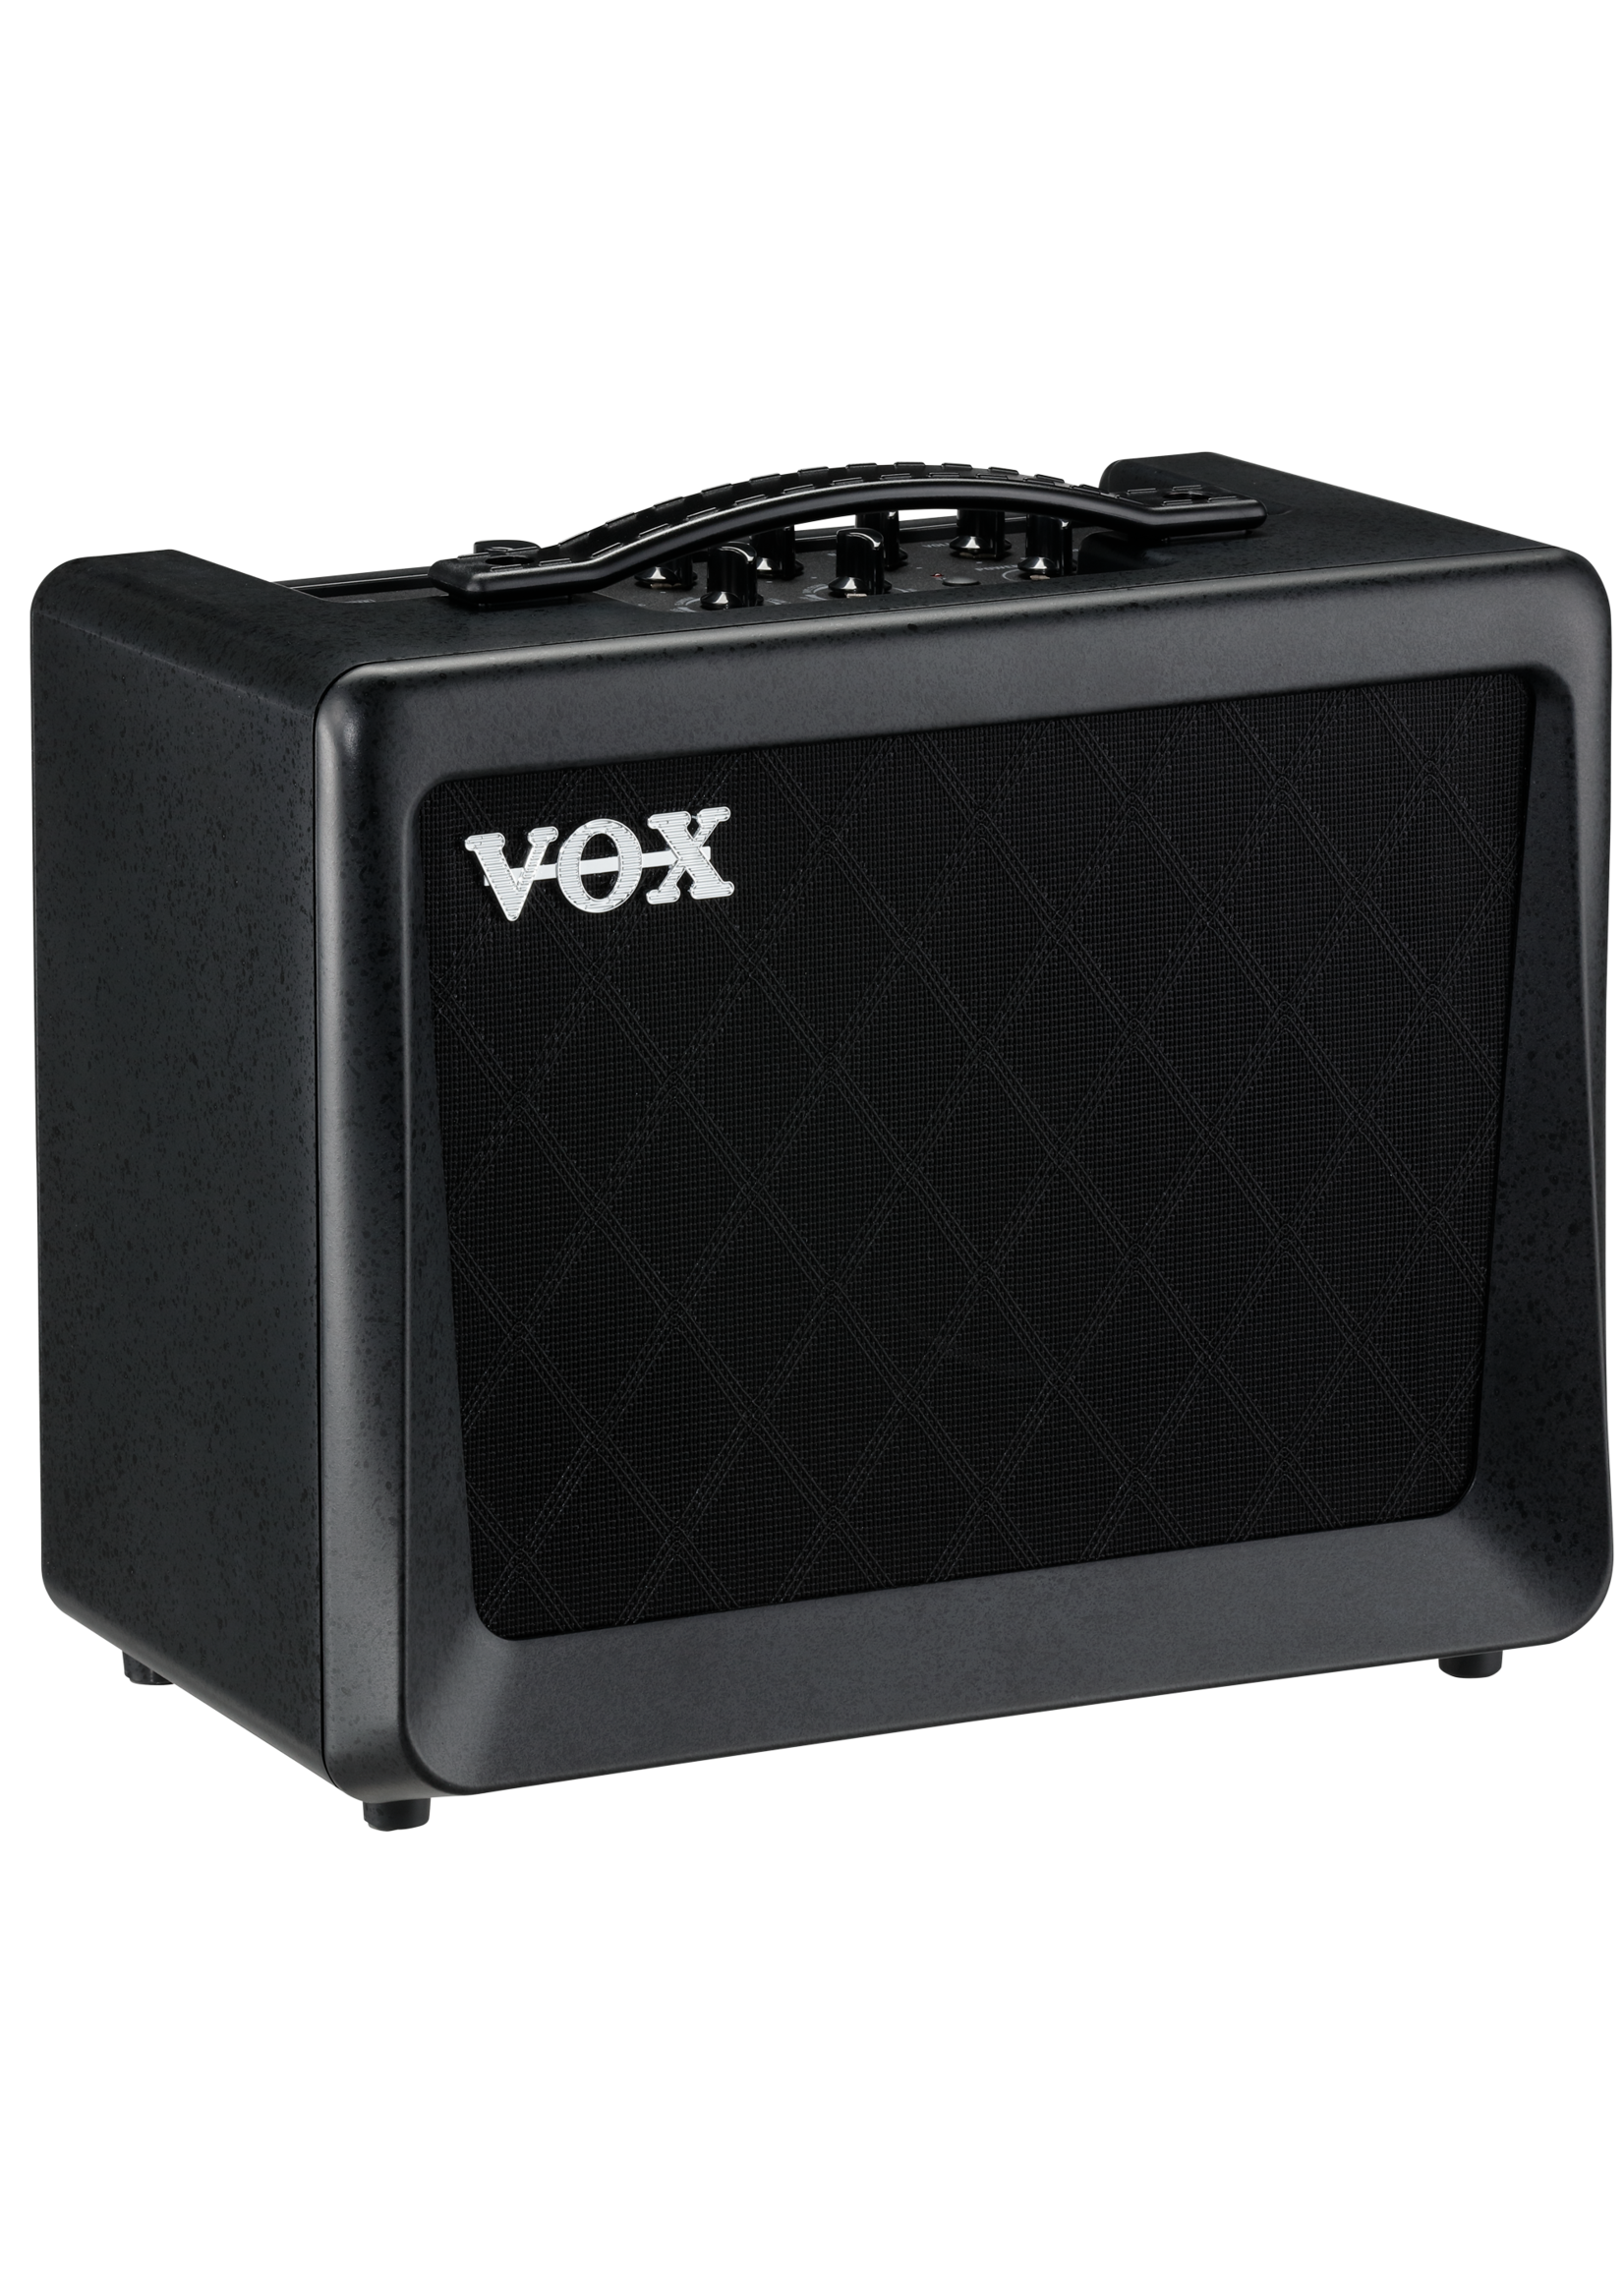 Vox Vox VX15 gitaarcombo